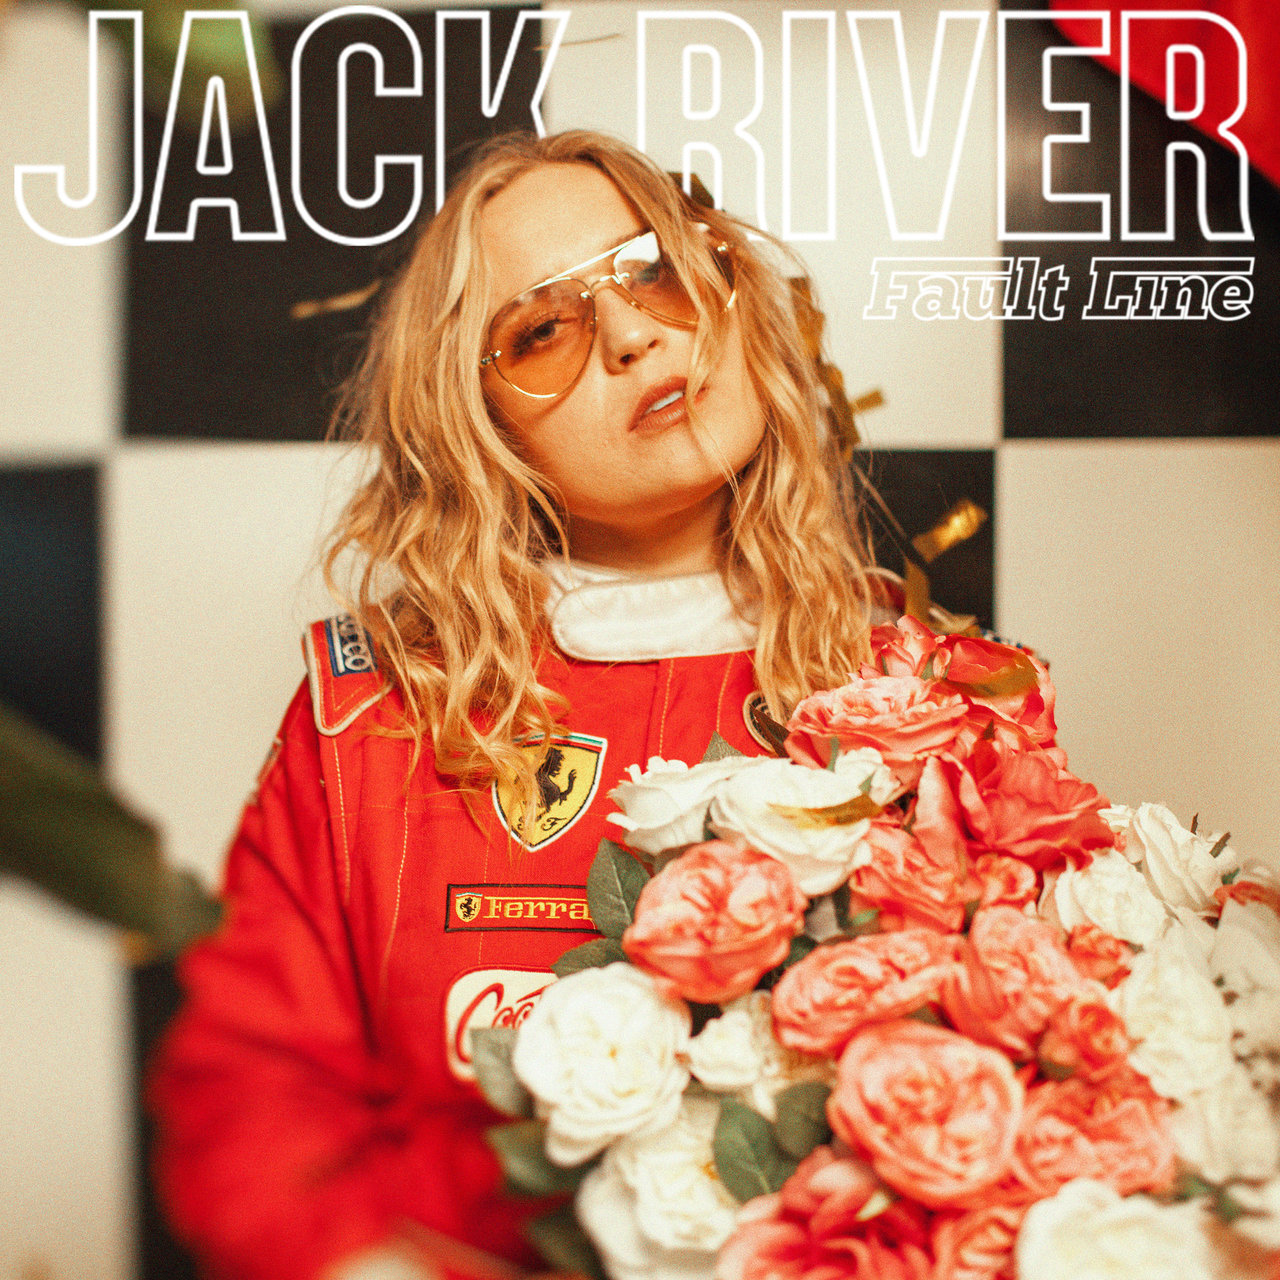 Jack River Fault Line cover artwork